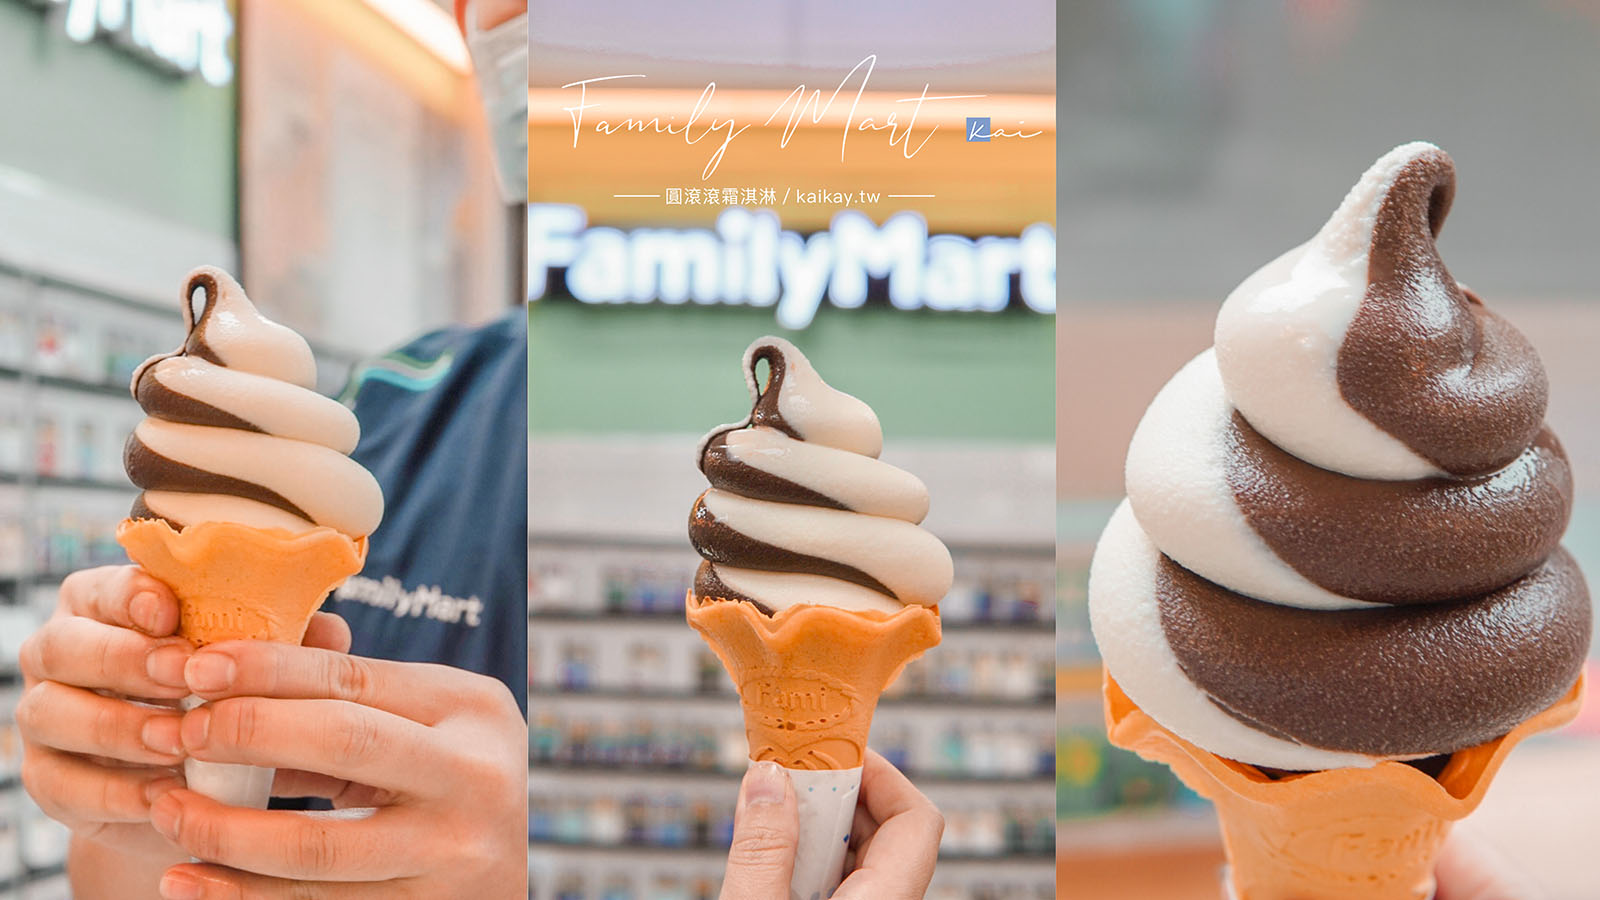 ☆【超商美食】全家巧克力霜淇淋「圓滾滾」造型超可愛。全台新增58間門市販售一覽表 @凱的日本食尚日記